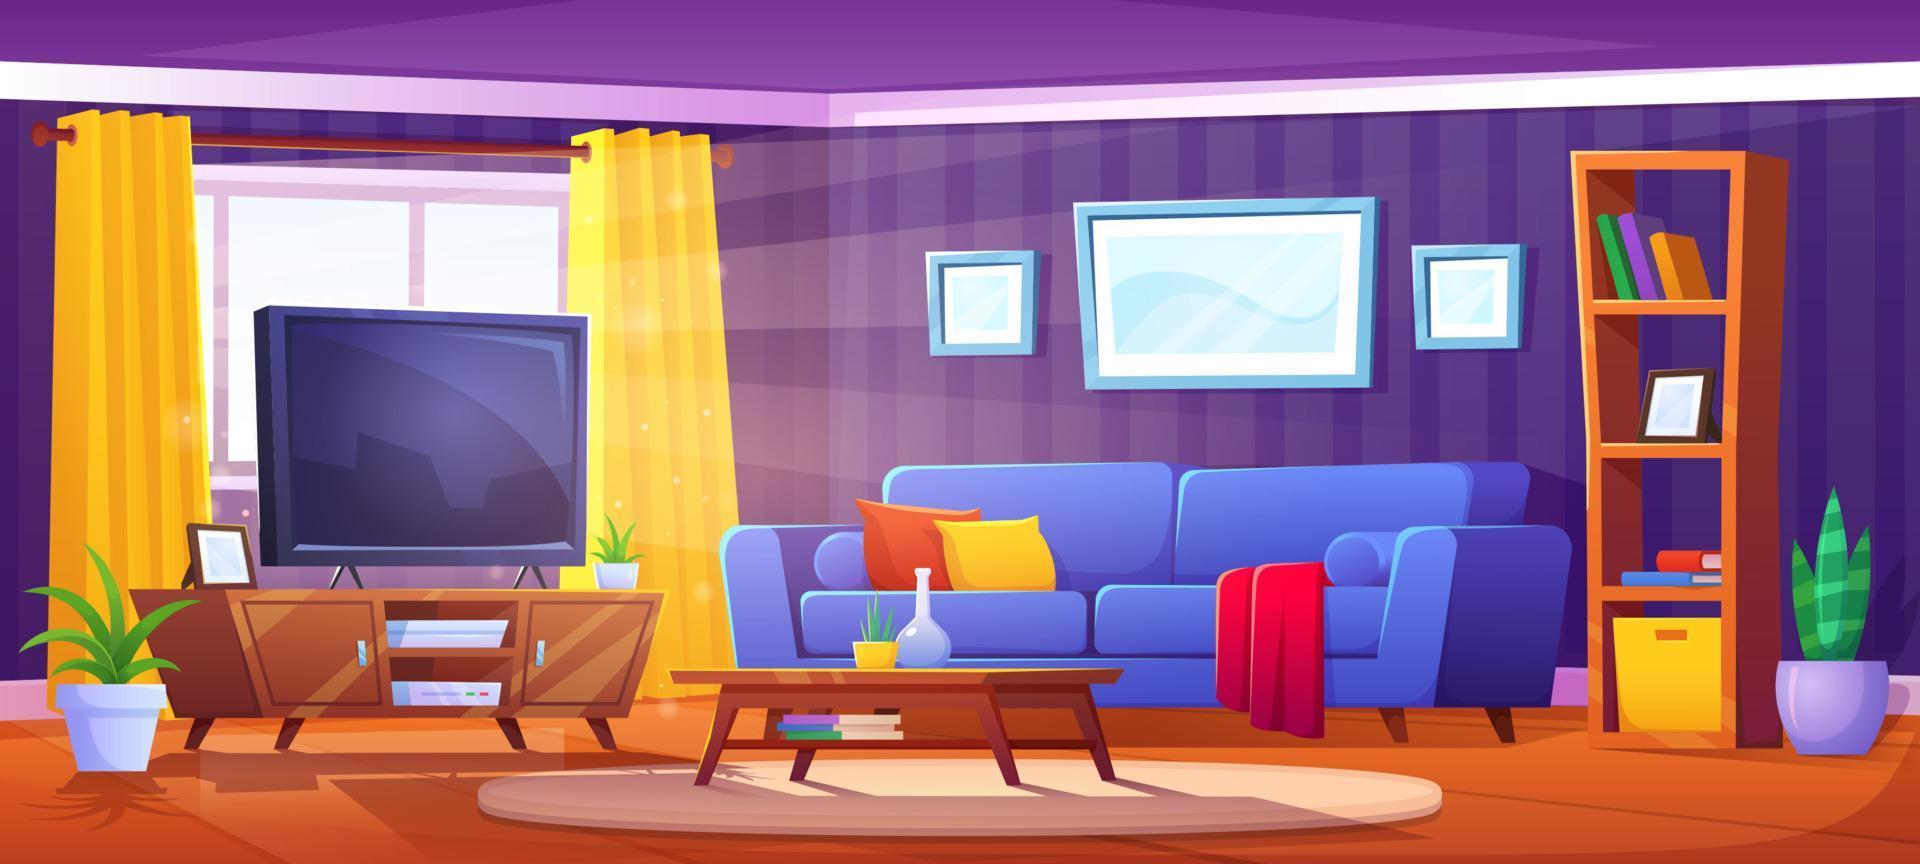 dessin animé vivant pièce intérieur avec canapé et la télé vecteur